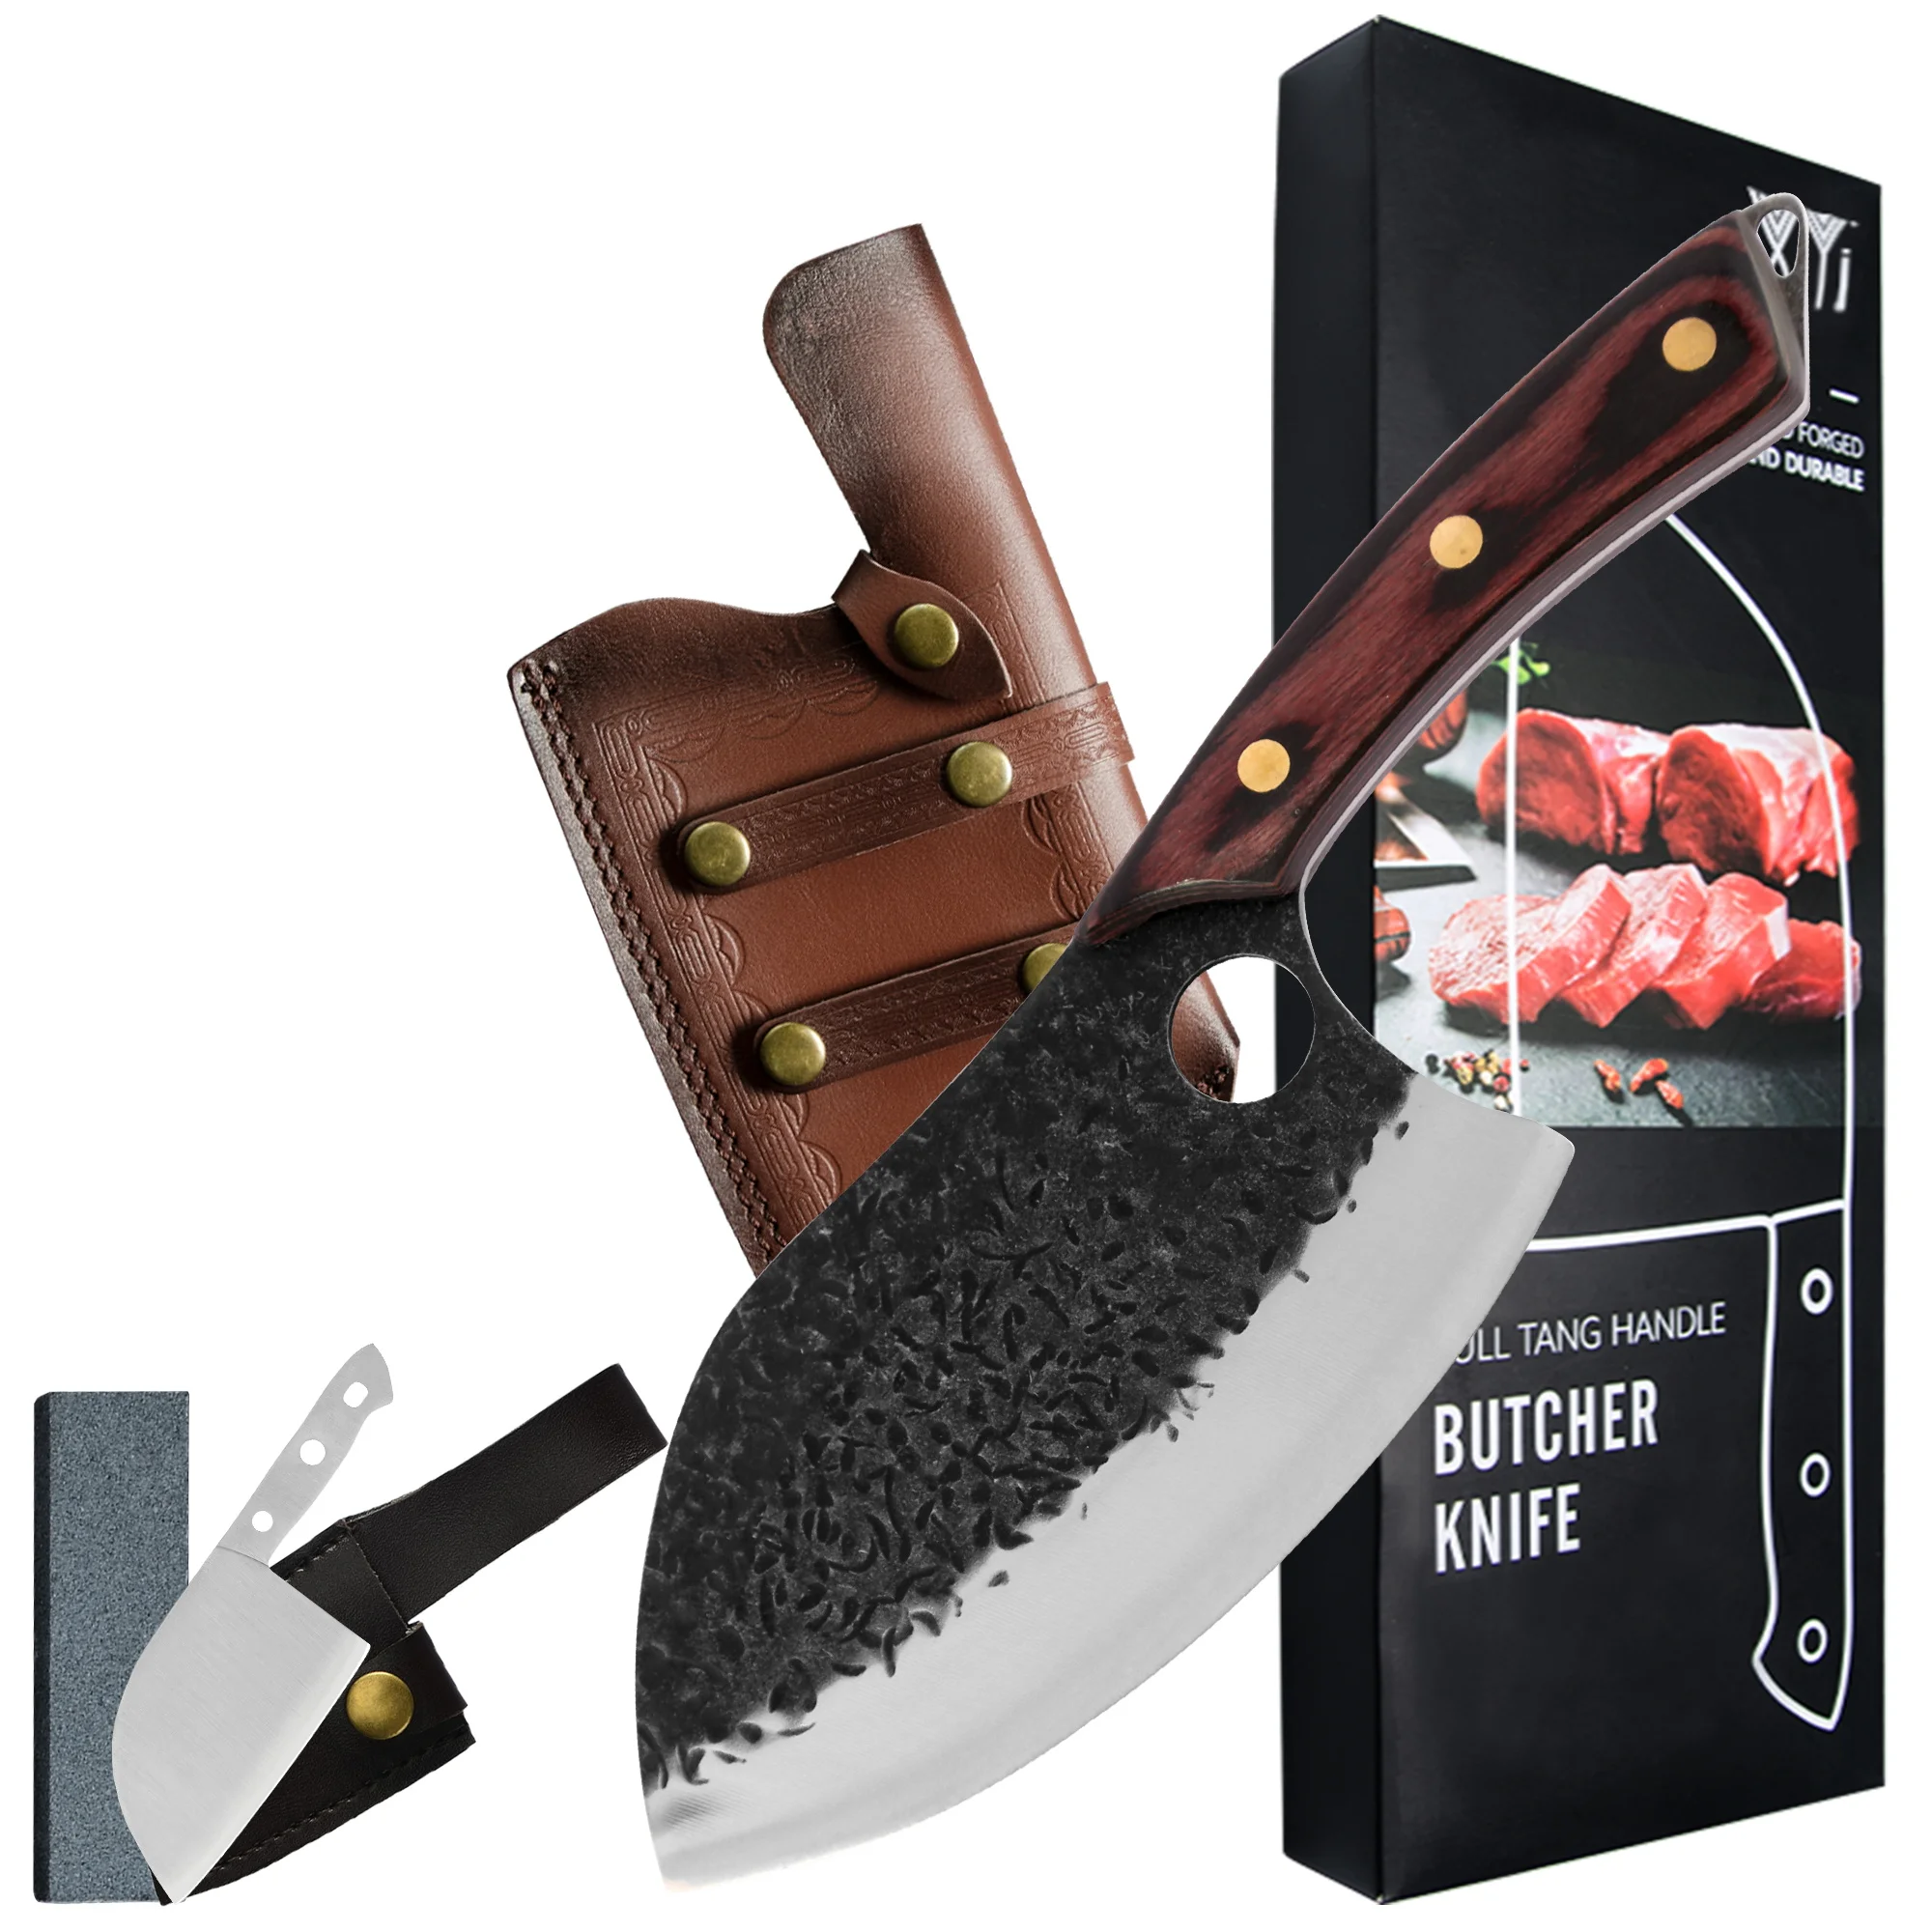 

XYj нож для мясника ручной работы из нержавеющей стали 7 дюймов ножи для мяса Мясницкий ножи для нарезки нож кованый нож широкие кухонные ножи...